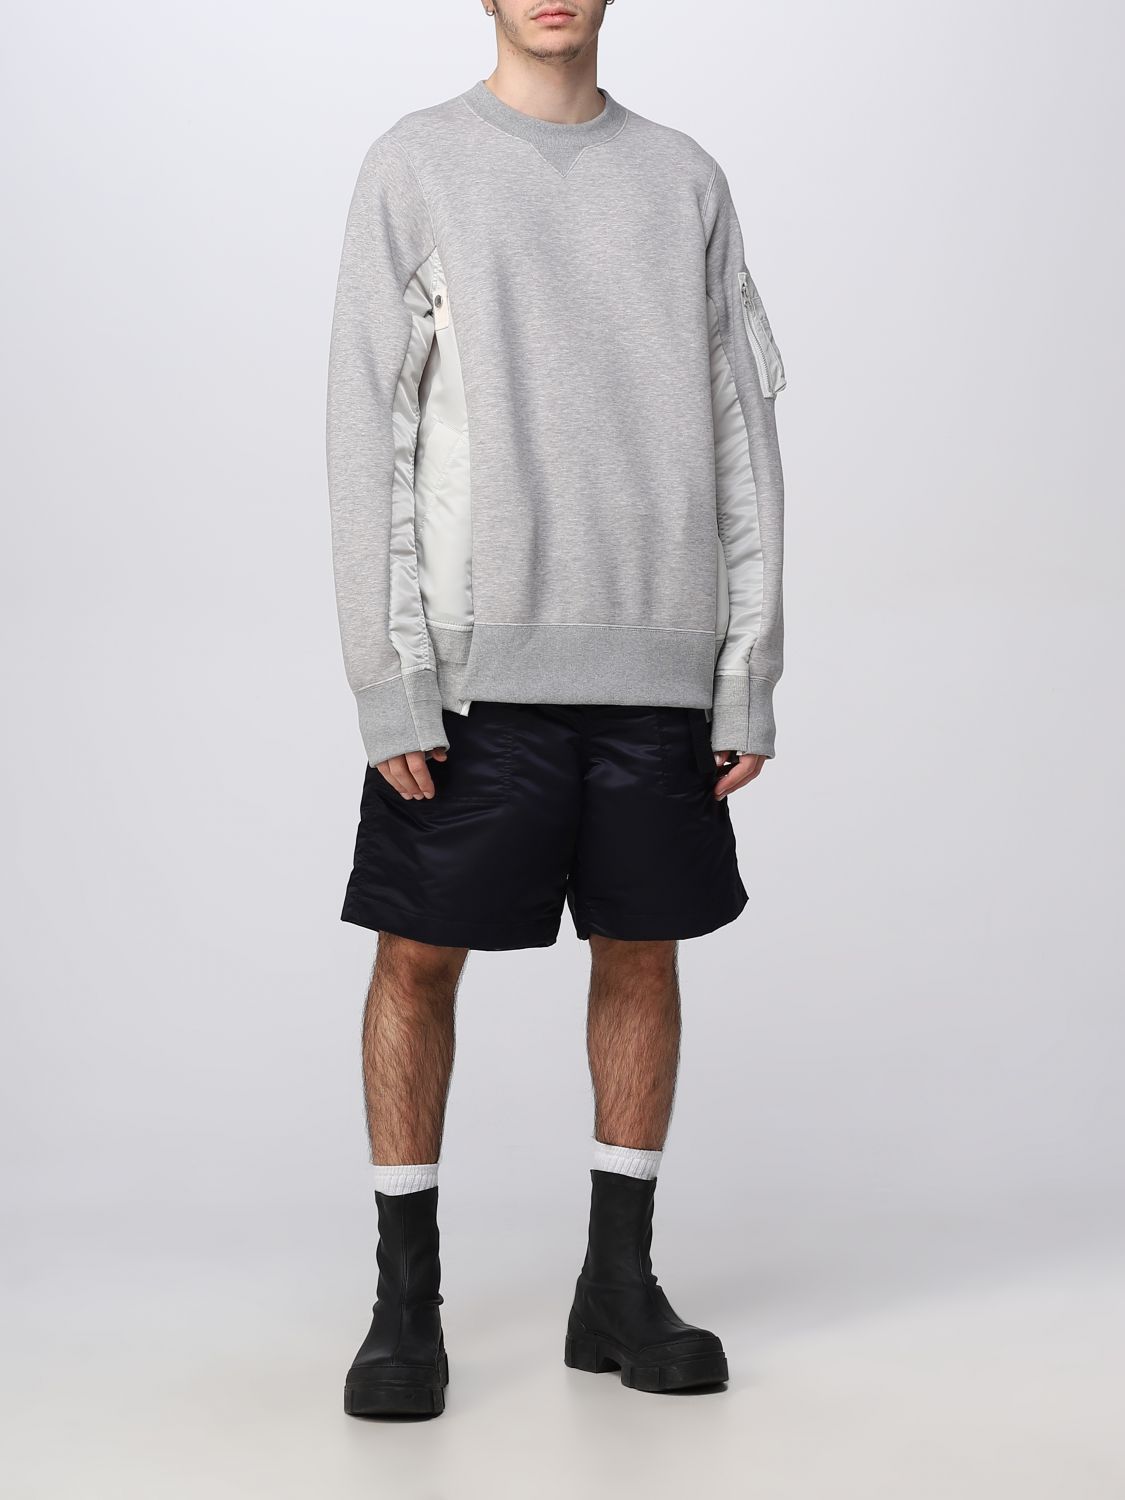 Sweater Sacai: Sacai sweater for man grey 2